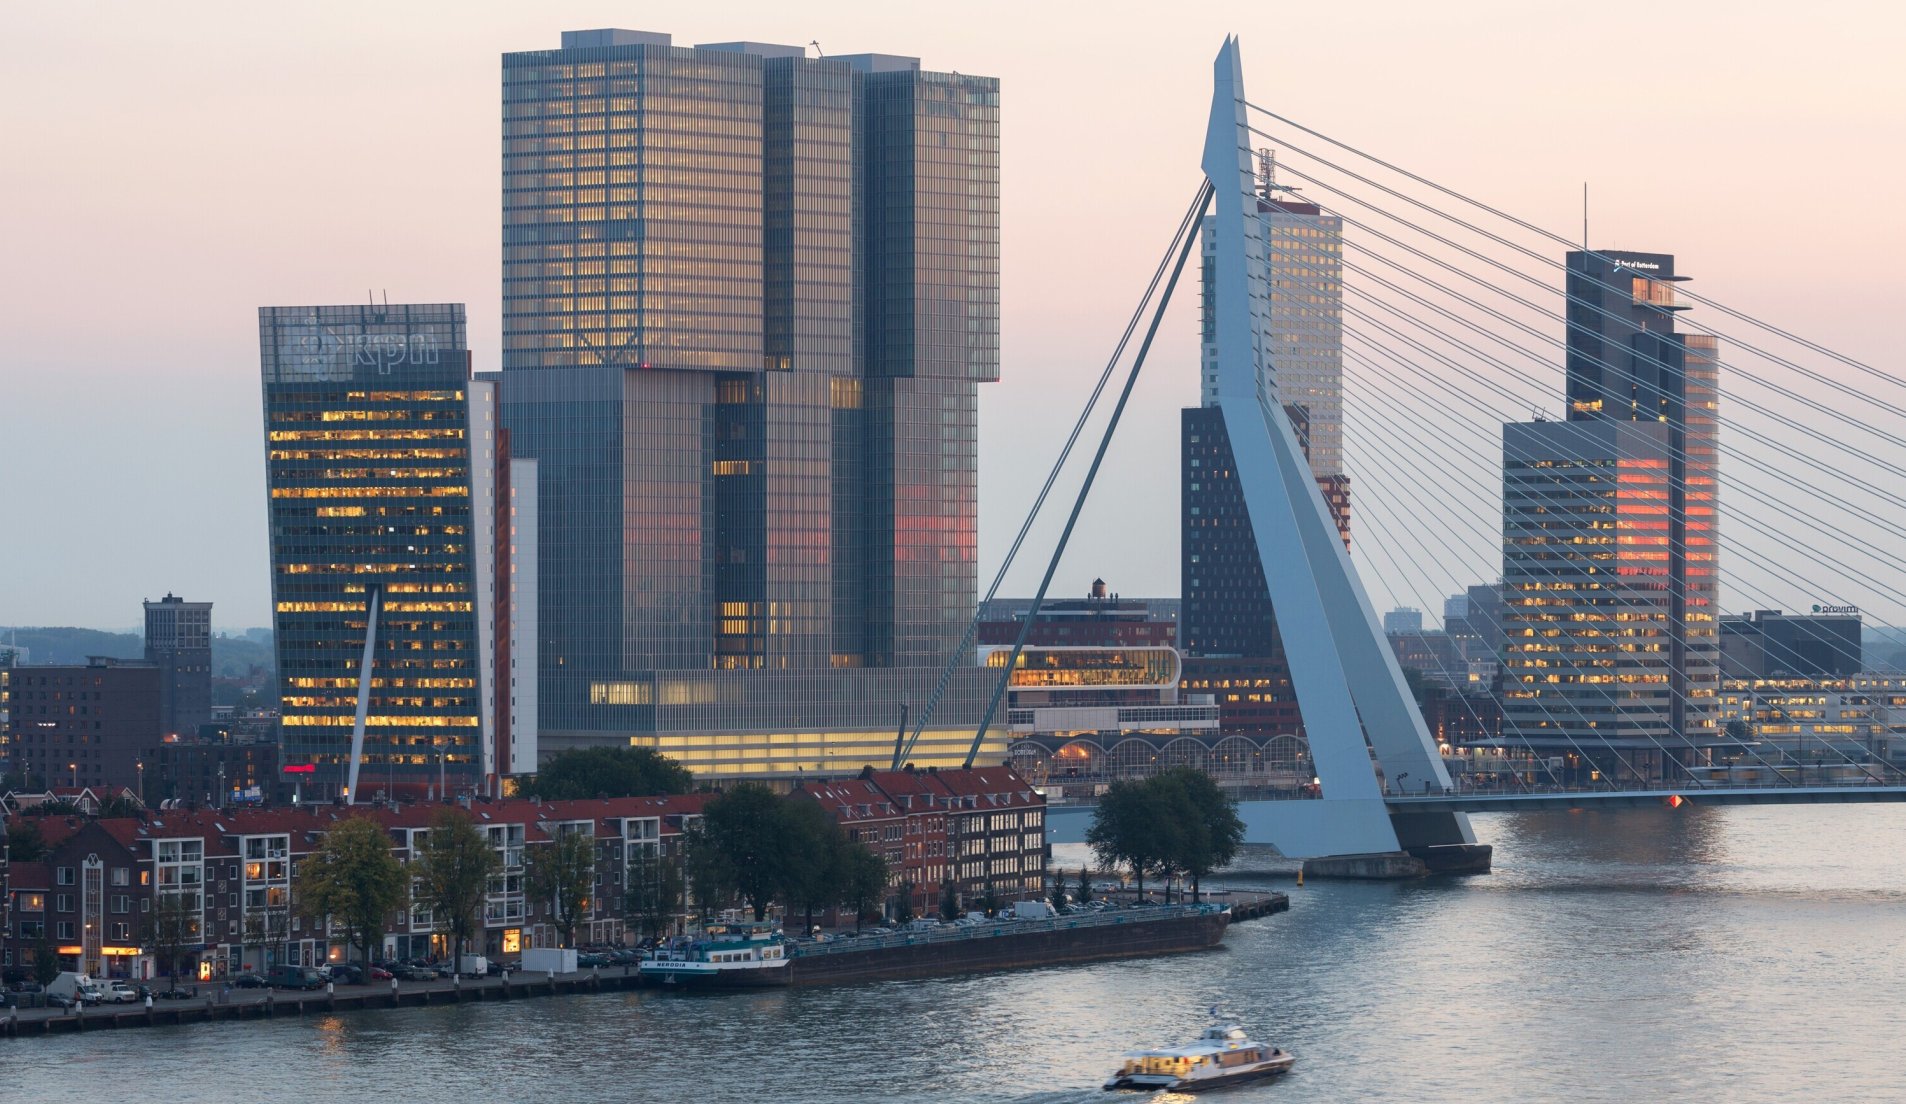 De haven in het centrum van Rotterdam